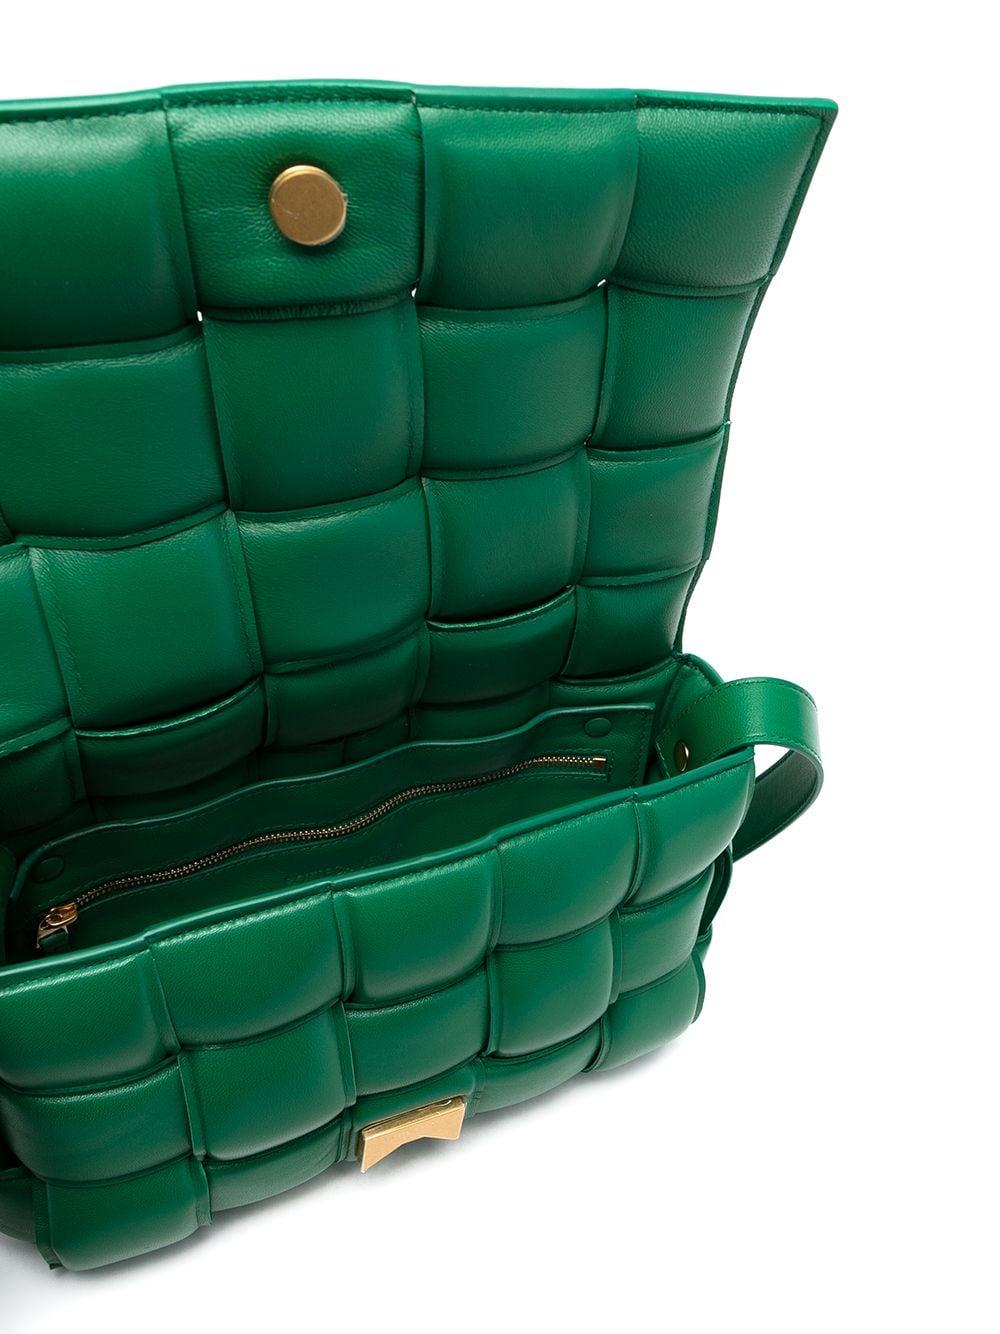 Bottega Veneta Leather Padded Cassette Bag in Green - Lyst